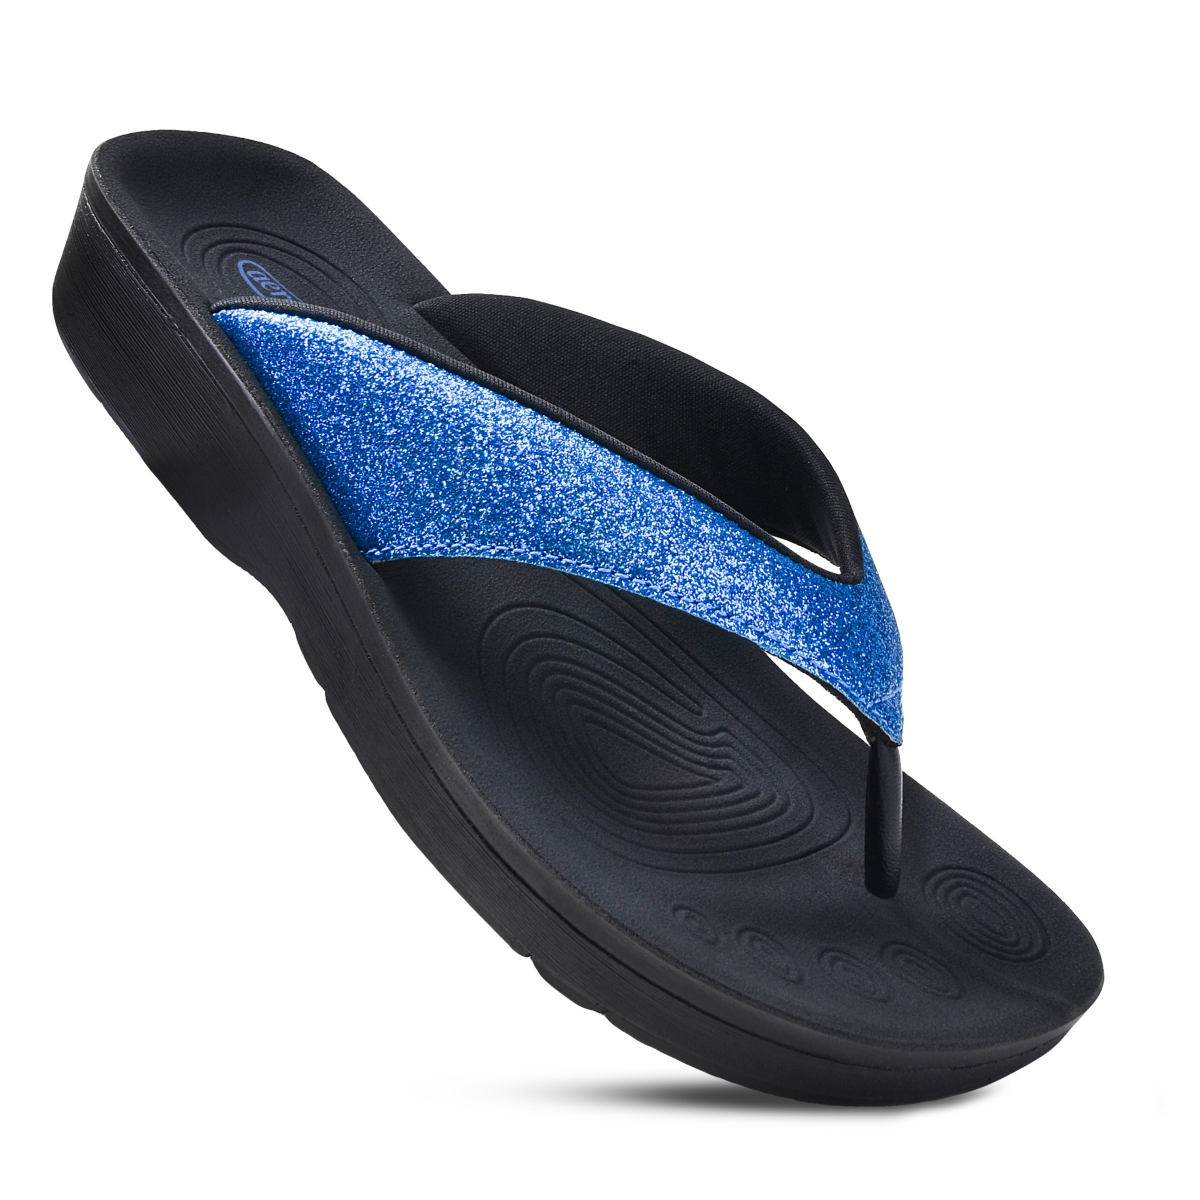 Crystal Mist Women's Orthotic Comfortable Sandal - Black